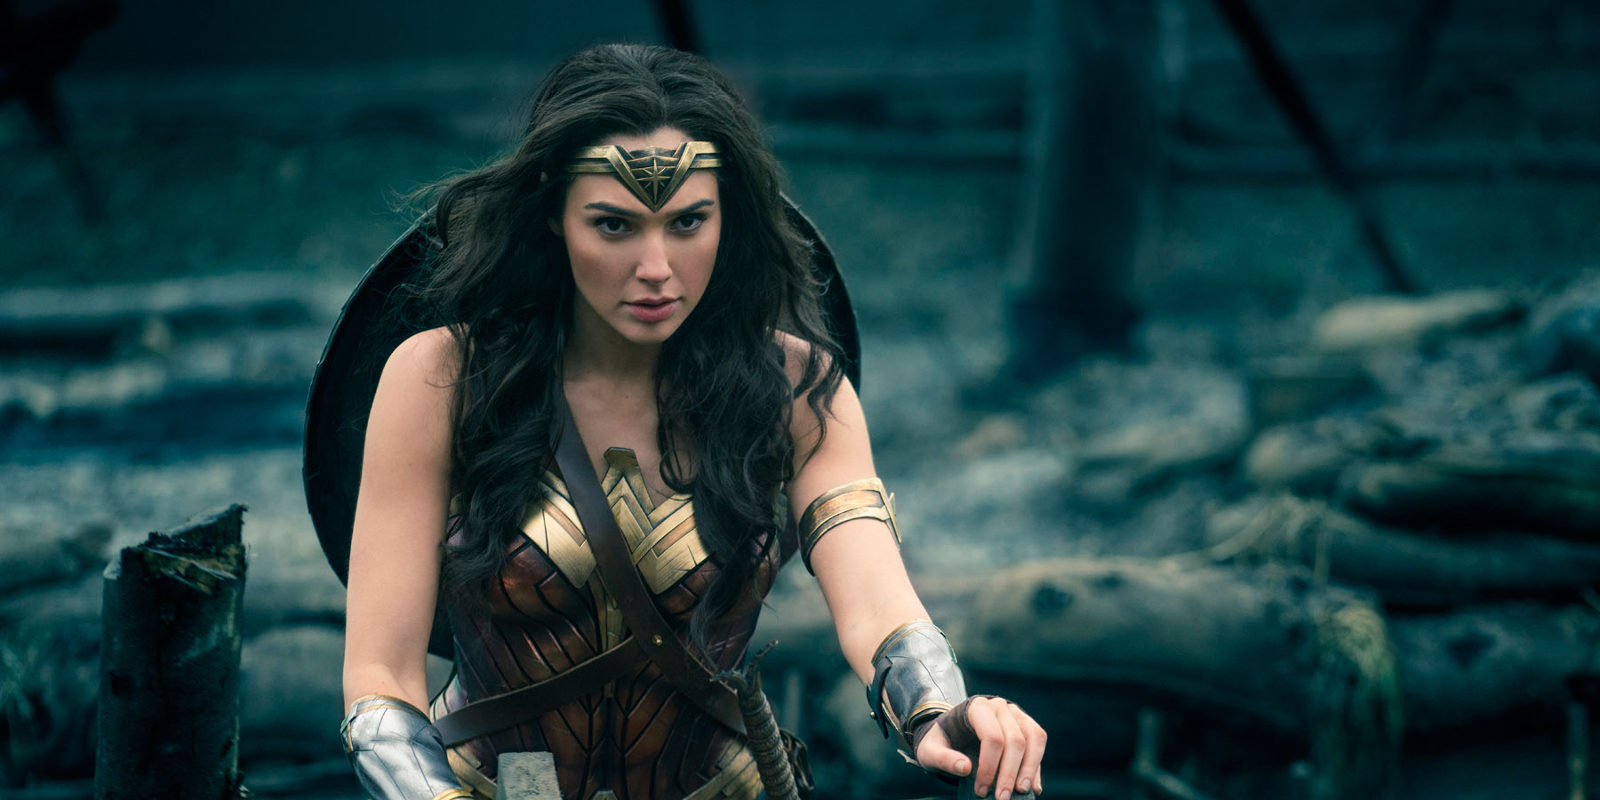 La escena de batalla en 'Wonder Woman' que emocionó a Gal Gadot